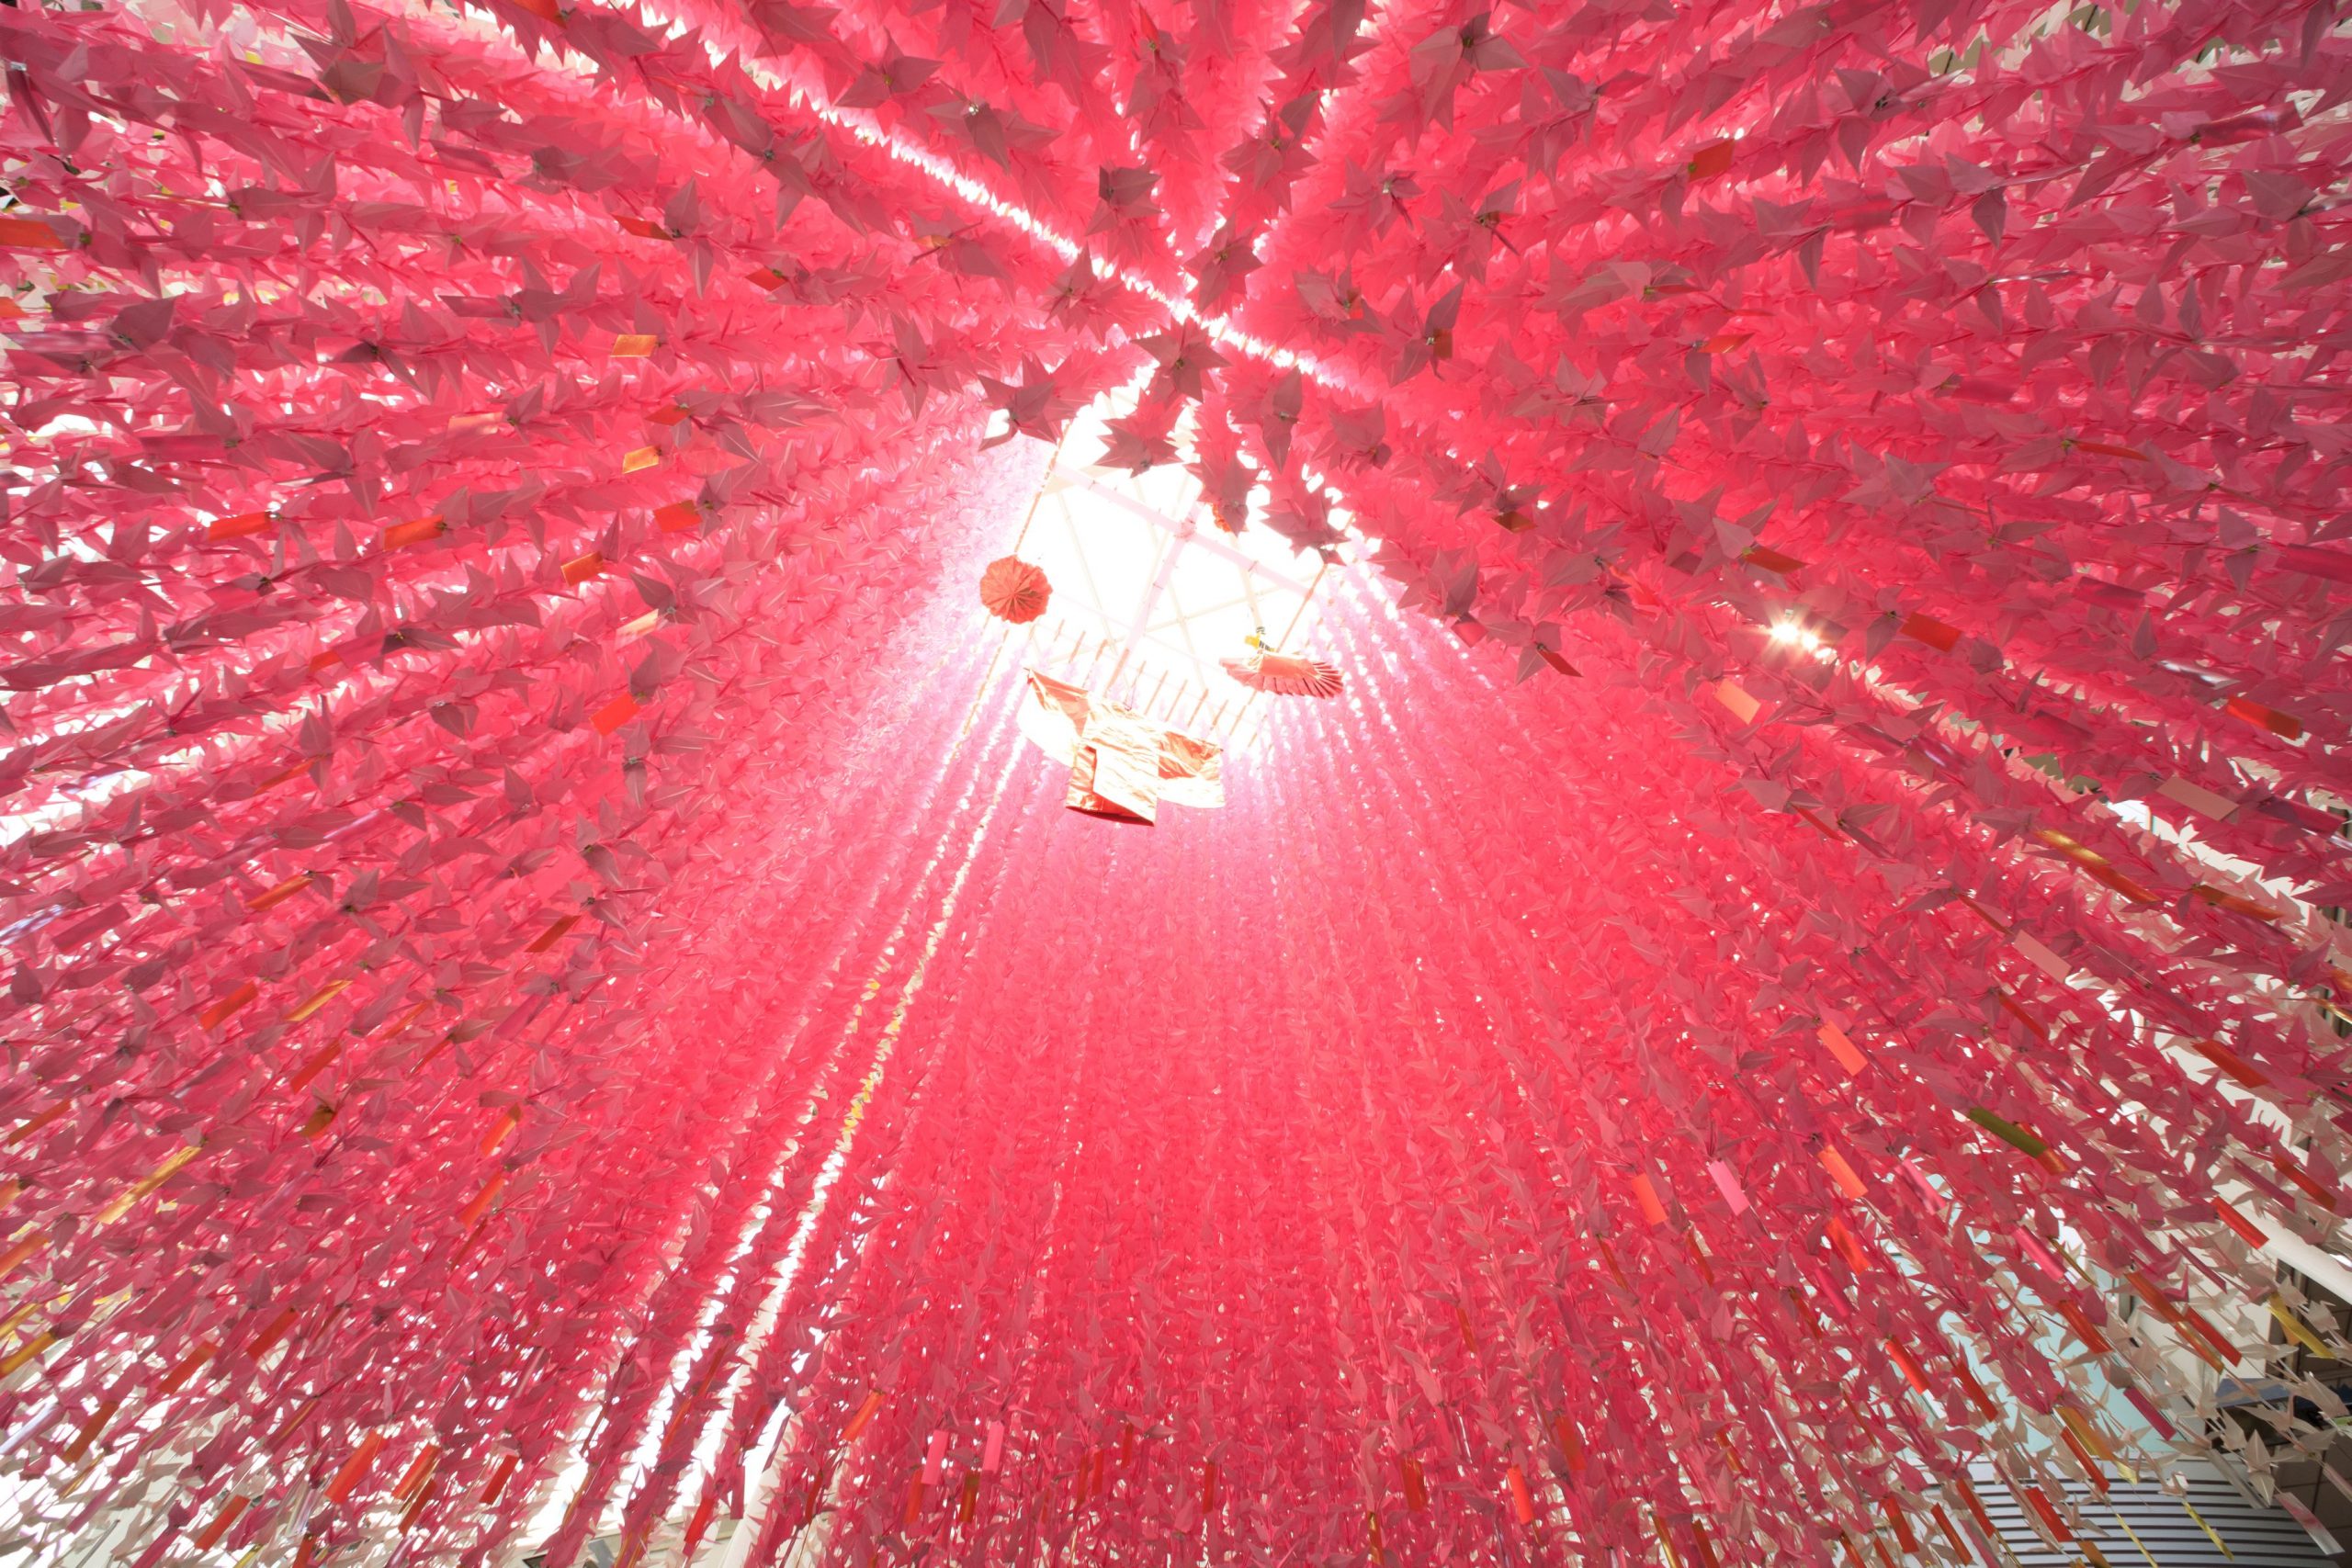 ©仙台七夕まつり協賛会　毎年恒例の8万羽の折鶴でつくる七夕飾りは、仙台市内の小中学生の合作。真下から中を見上げると幻想的